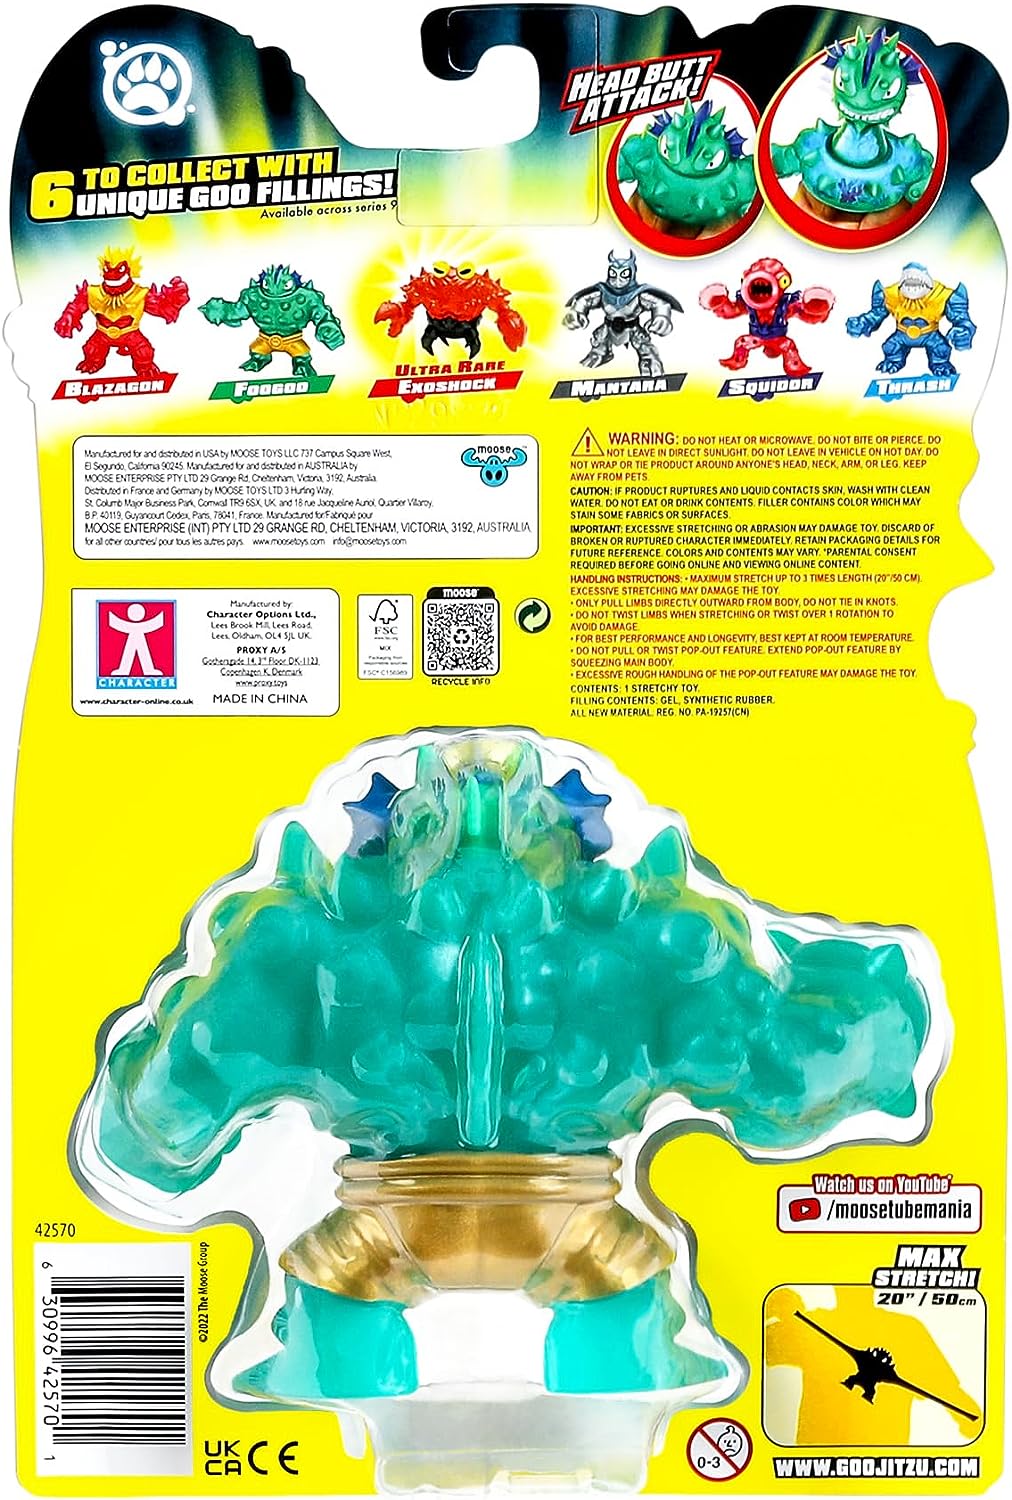 Helden von Goo Jit Zu Deep Goo Sea Foogoo Heldenpaket. Super Oozy, mit Glibber gefülltes Spielzeug.